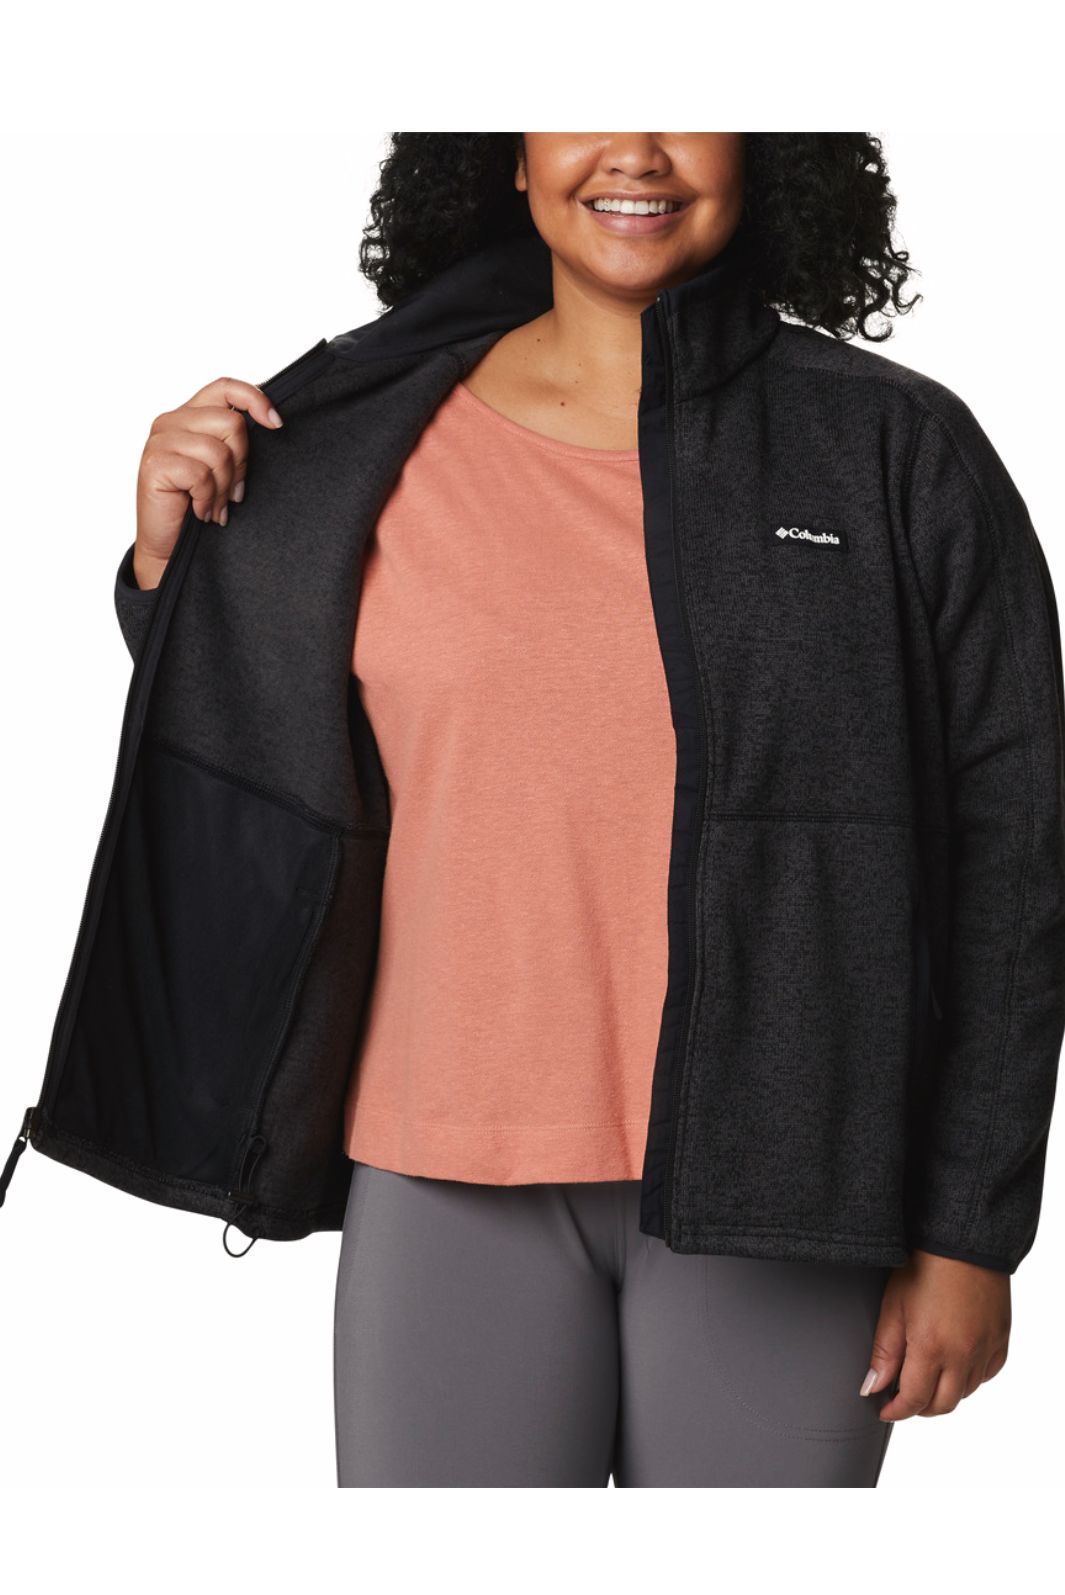 Women's Sweater Weather™ Fleece Full Zip Jacket